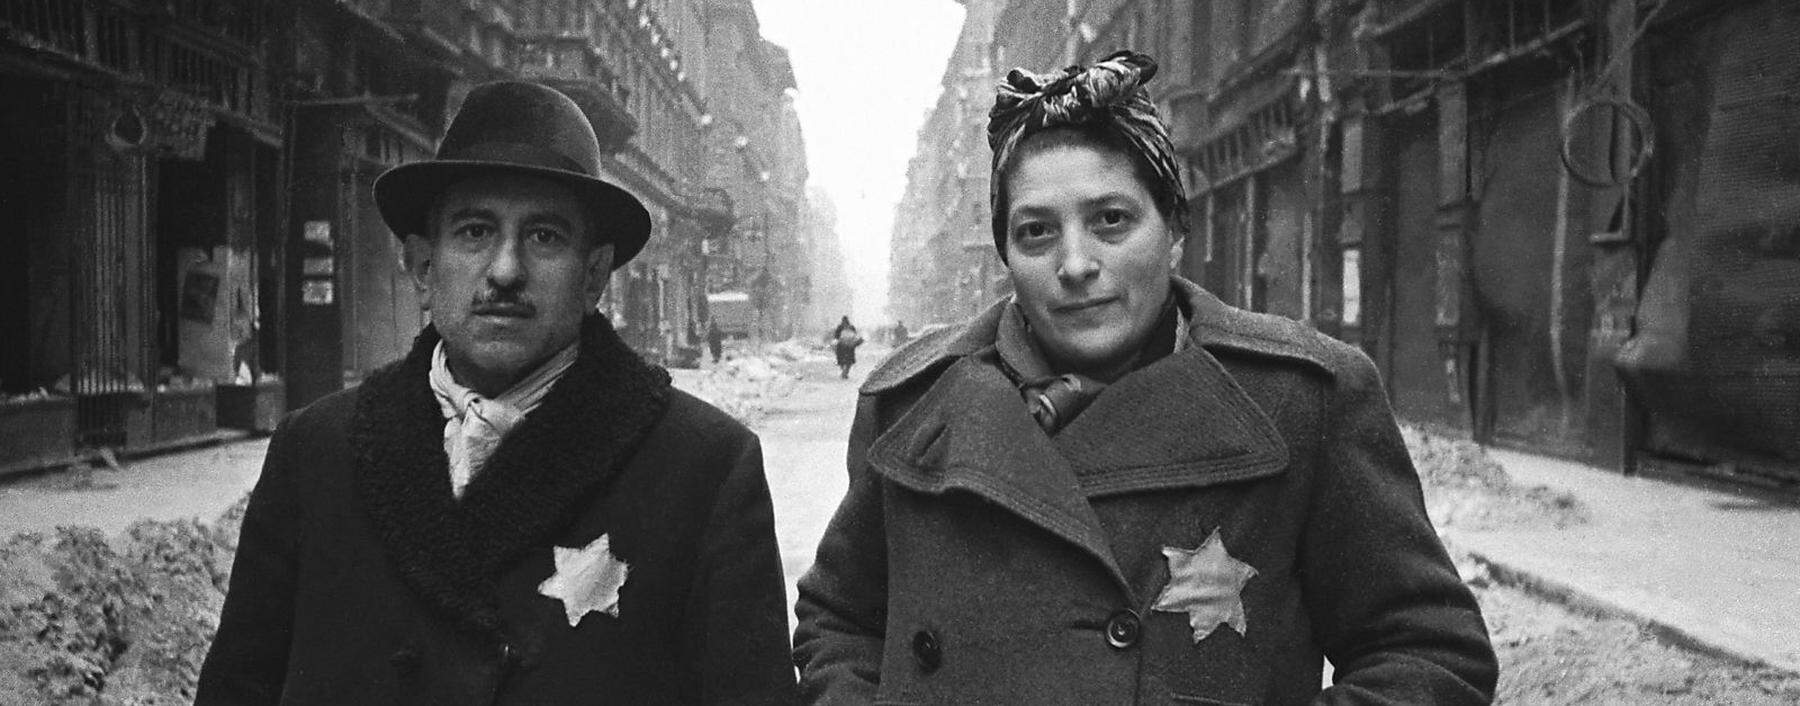 Dieses unbekannte Paar überlebte die Vernichtung der ungarischen Juden und Jüdinnen, die im Frühjahr 1944 begonnen hatte. 